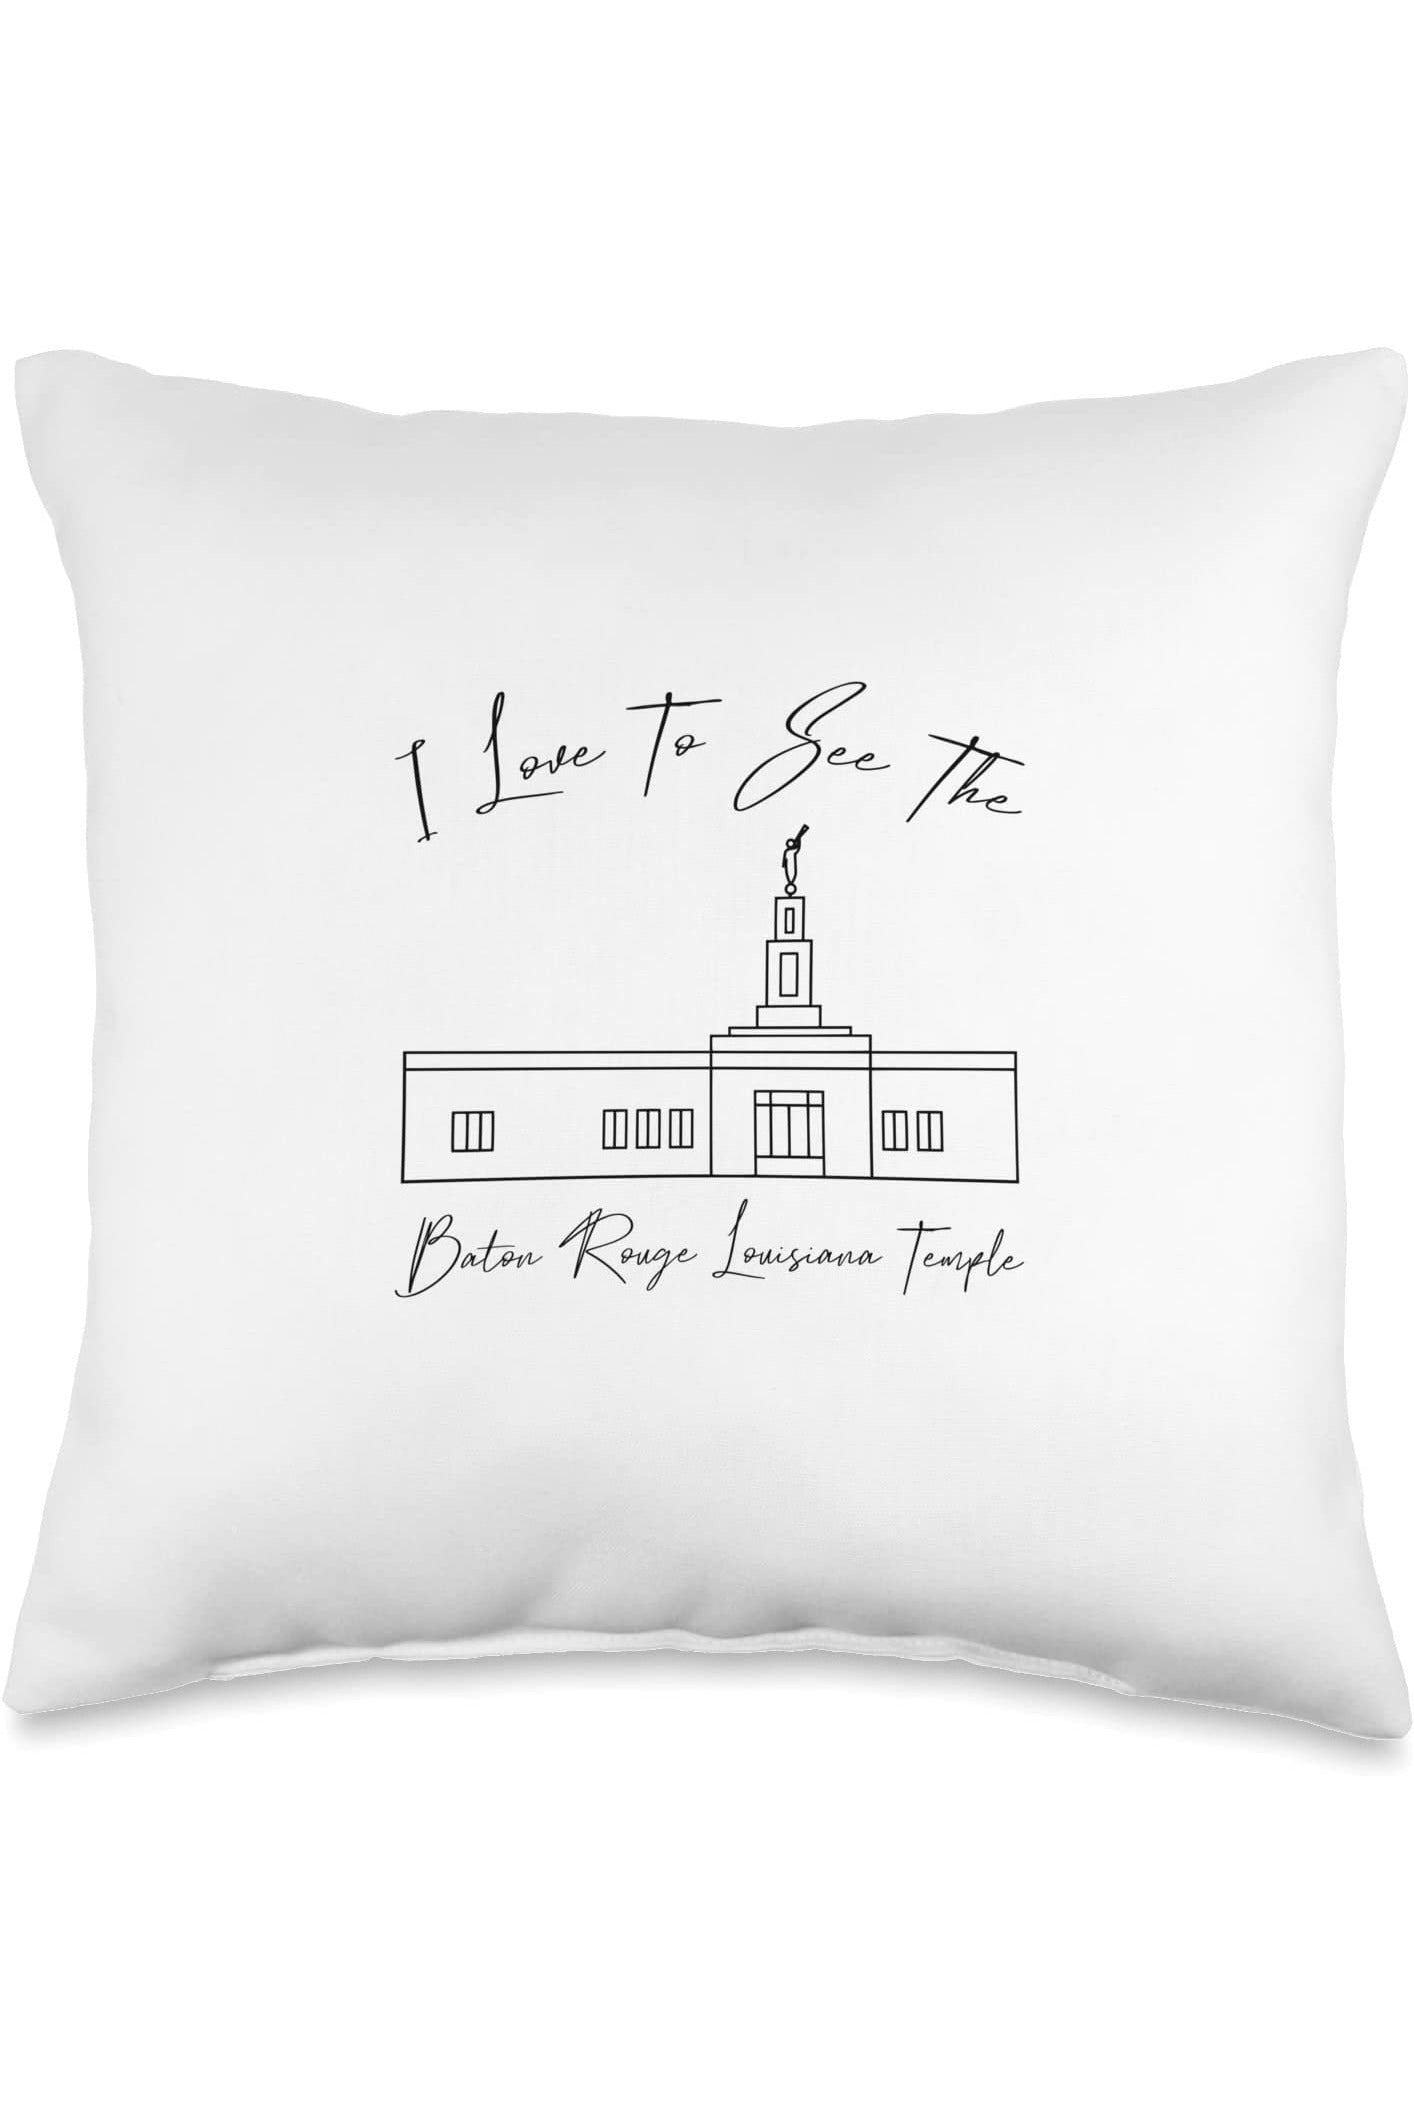 Baton Rouge Louisiana Temple Throw Pillows - Calligraphy Style (English) US